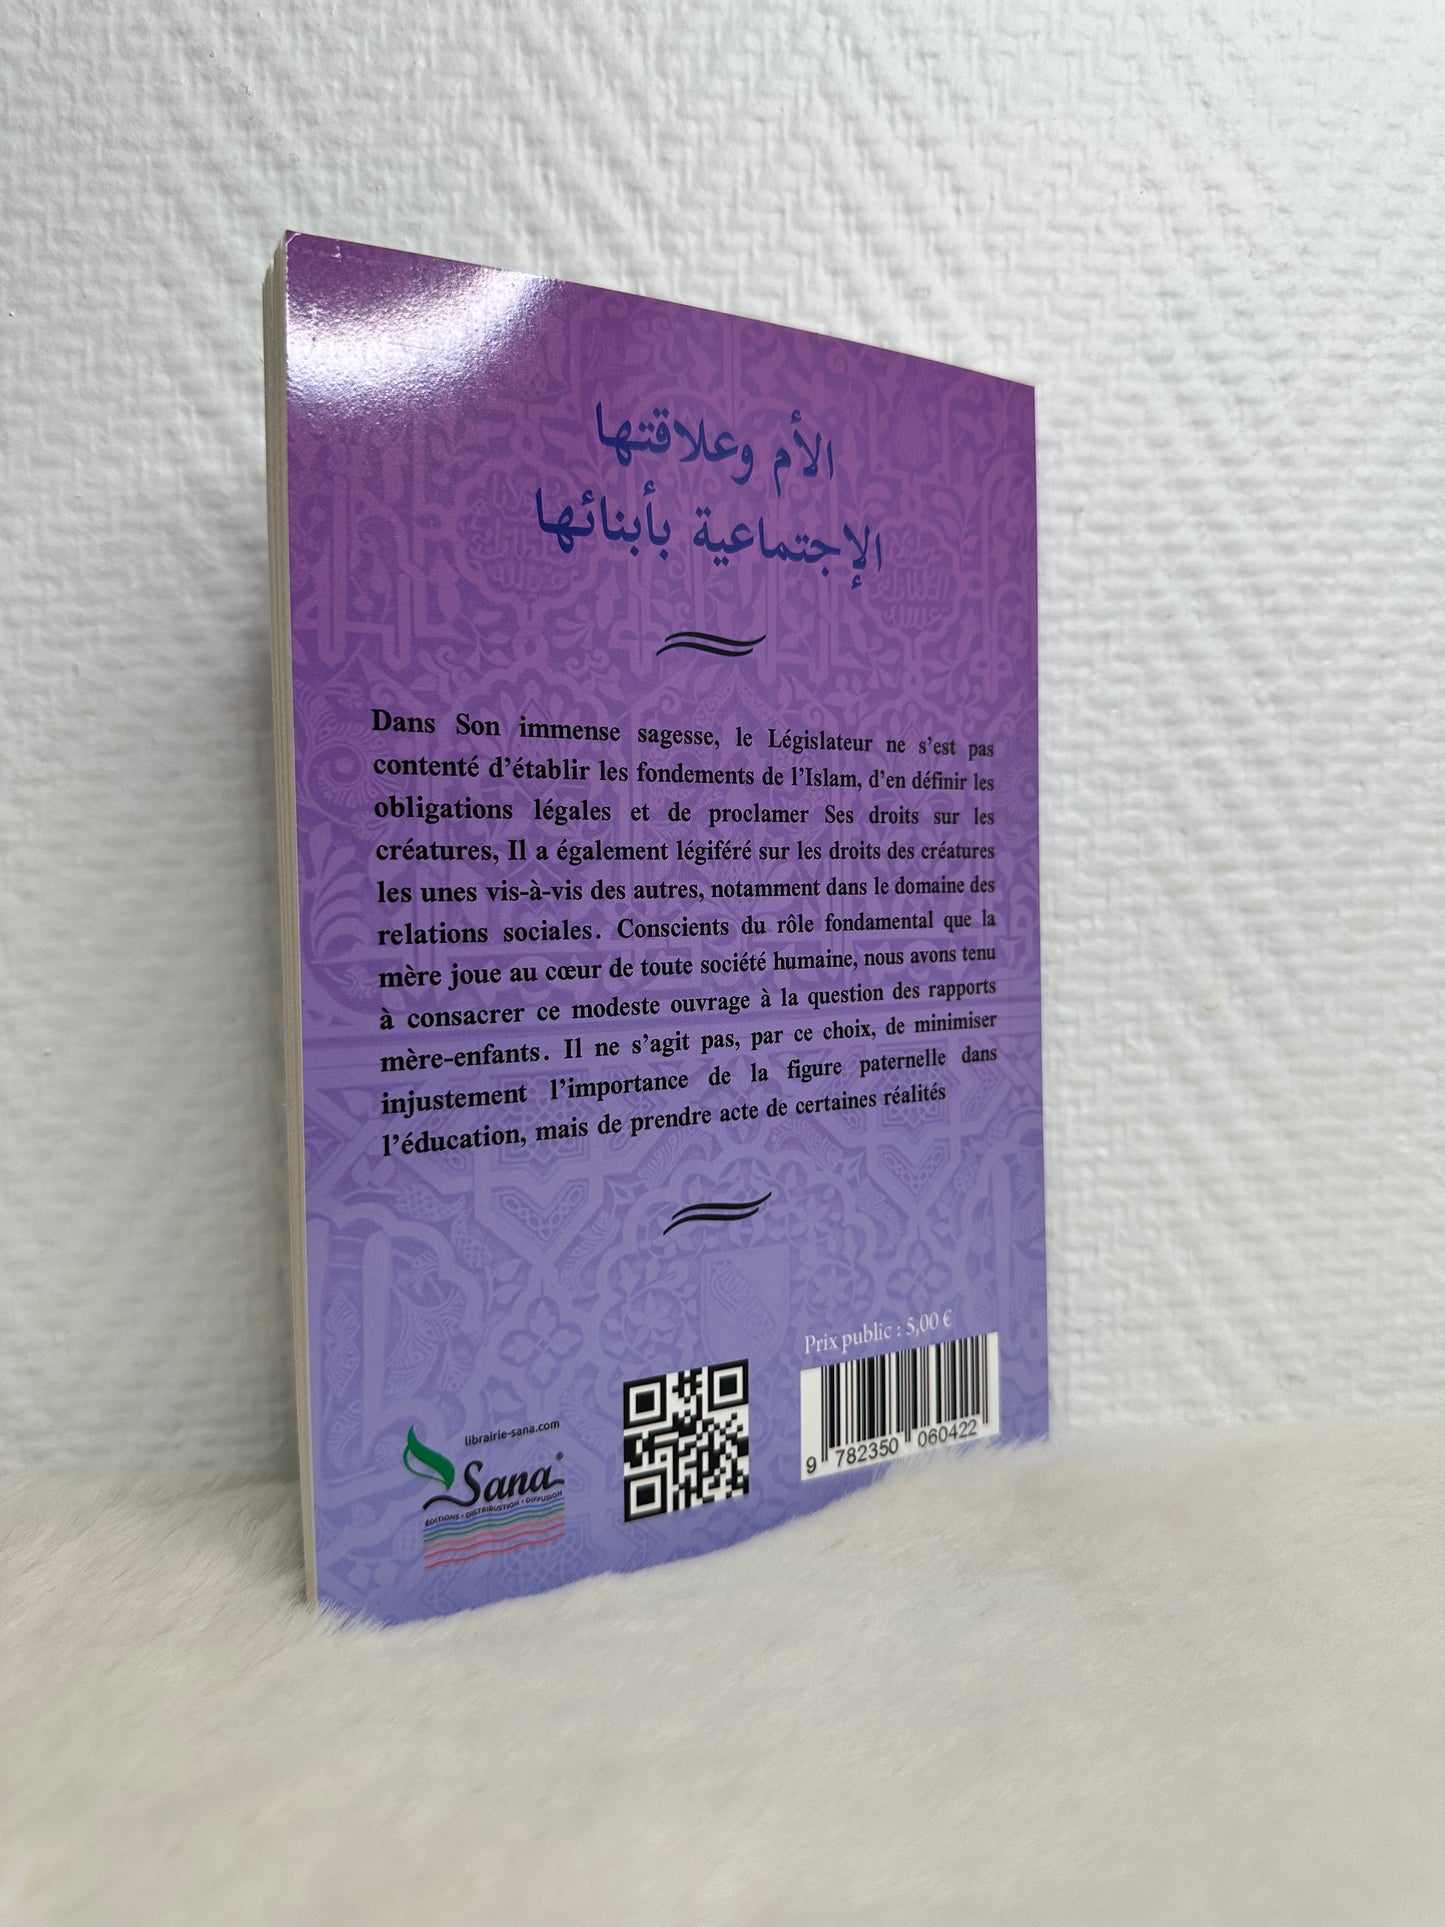 Les Rapports mère-enfants en Islam - Oum Soufiane - Éditions Assia